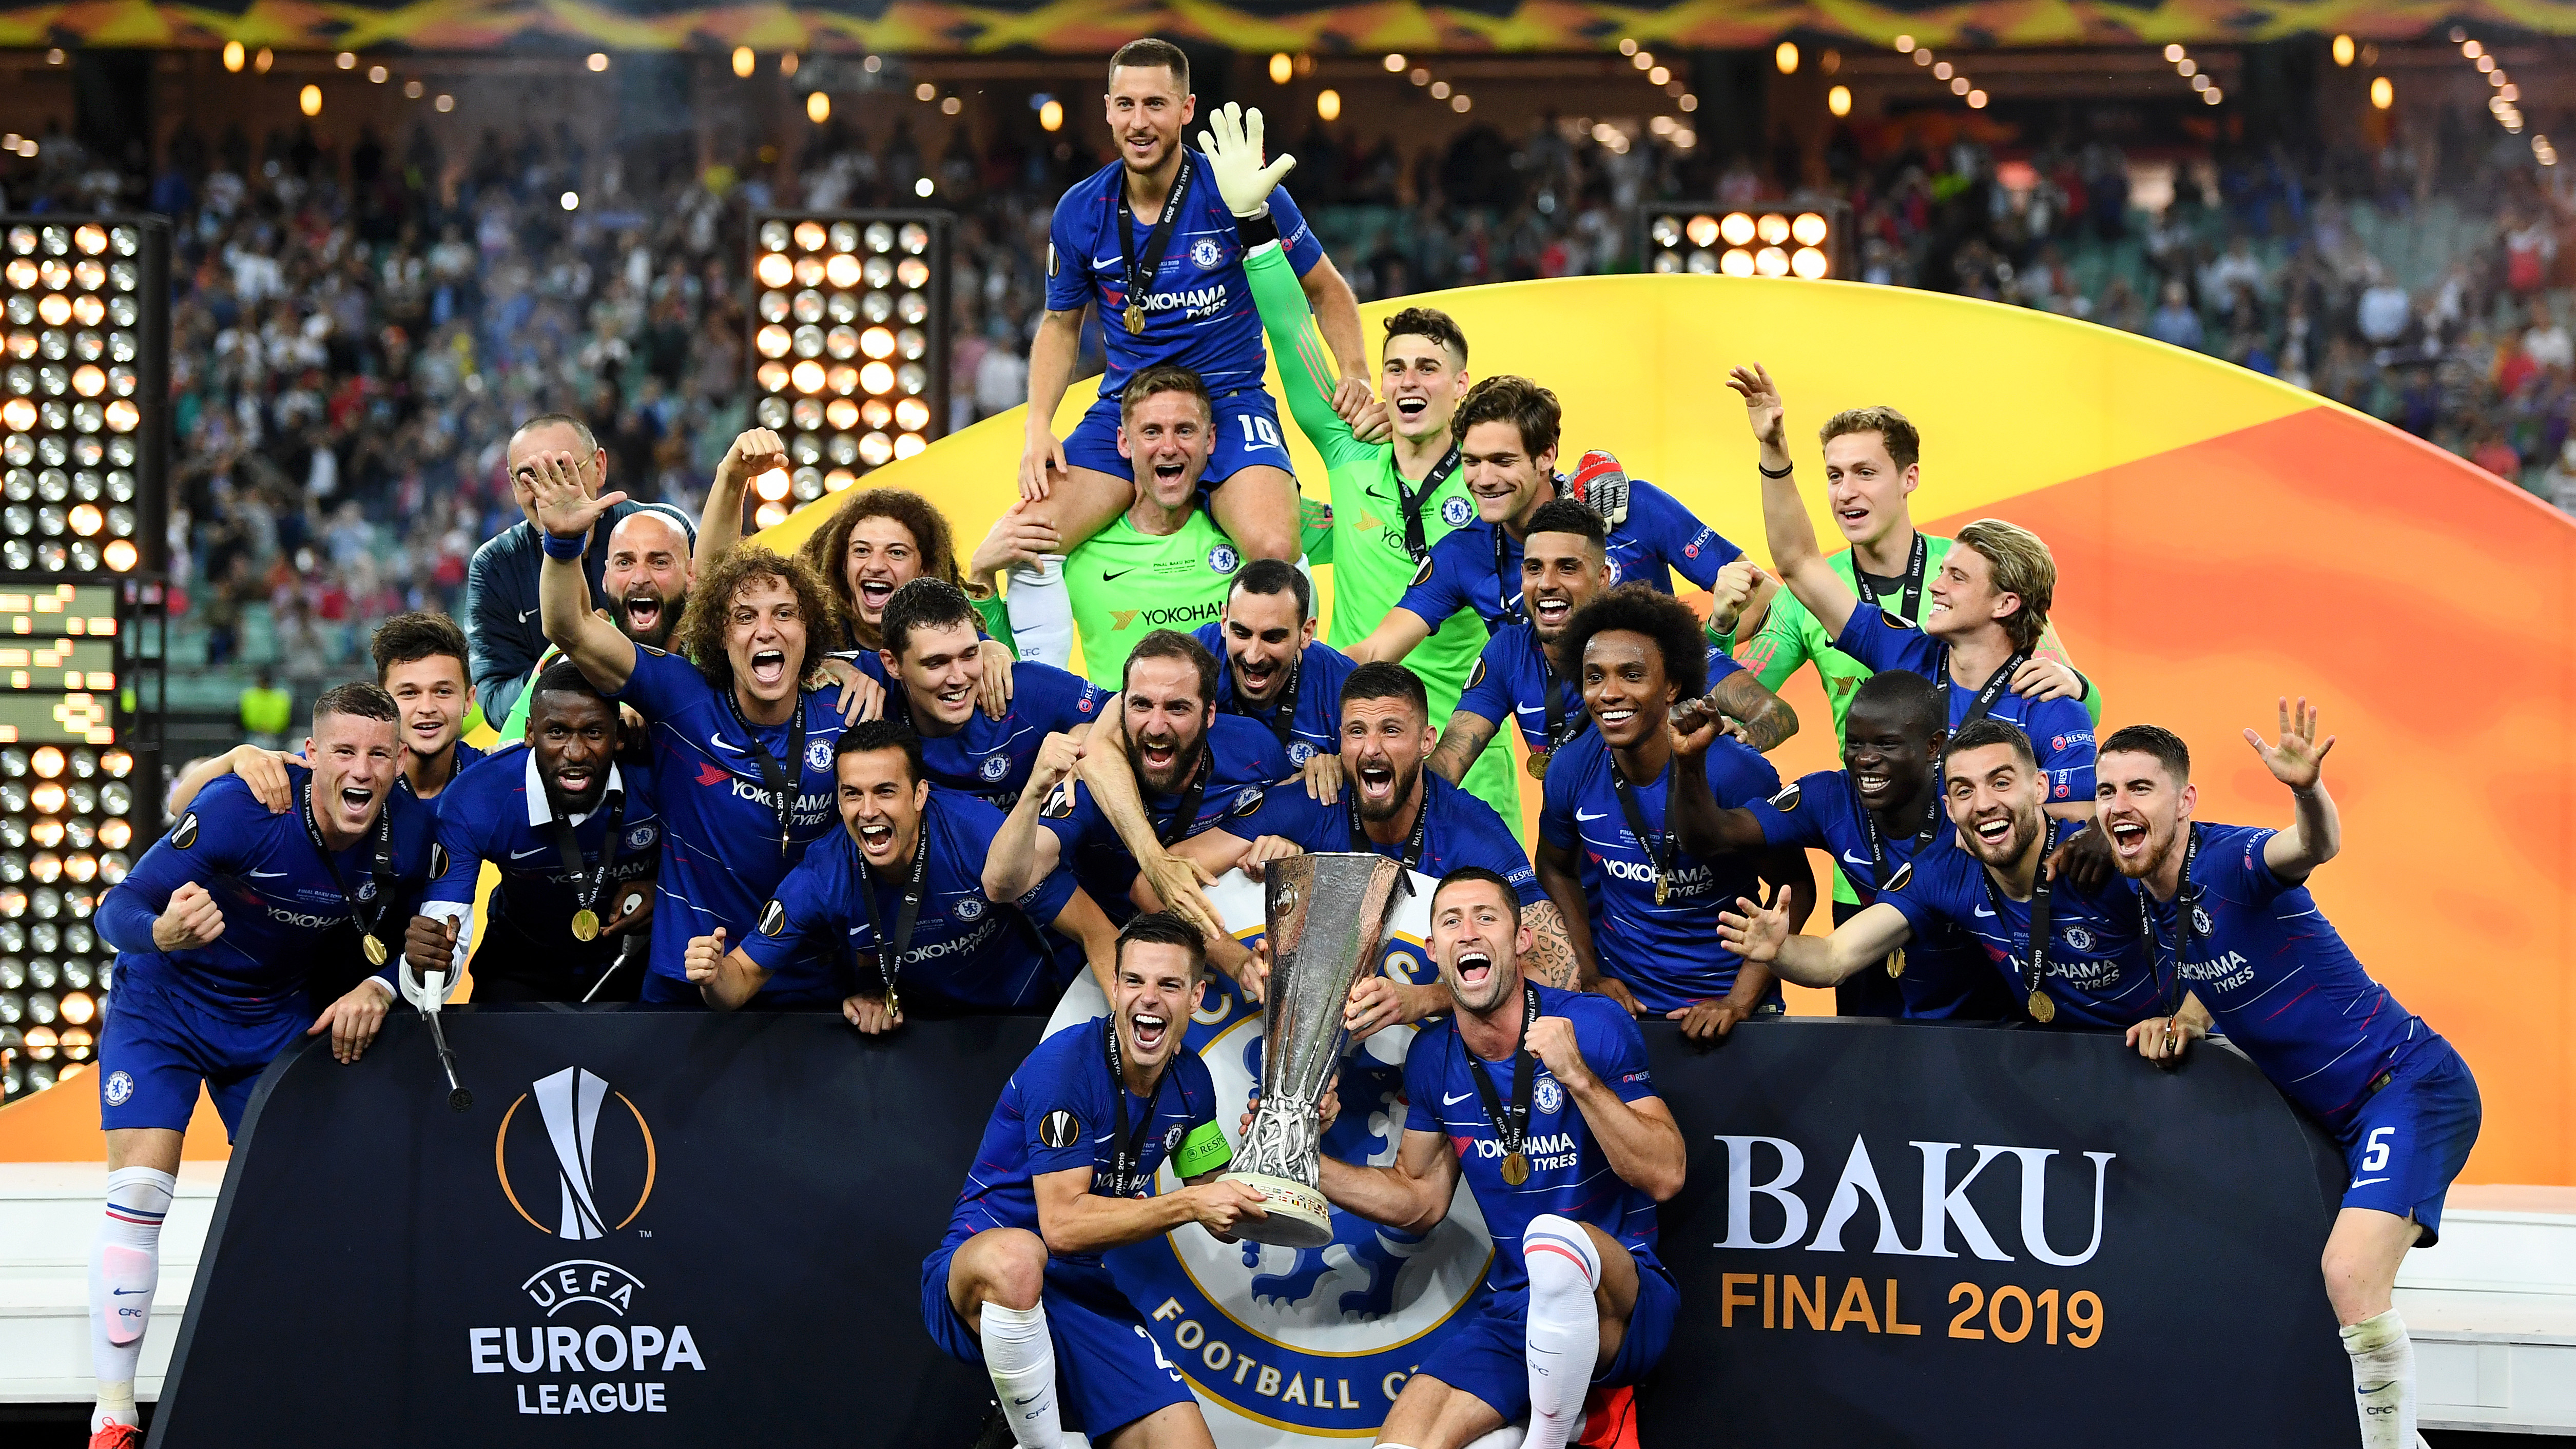 europa league winners 2019